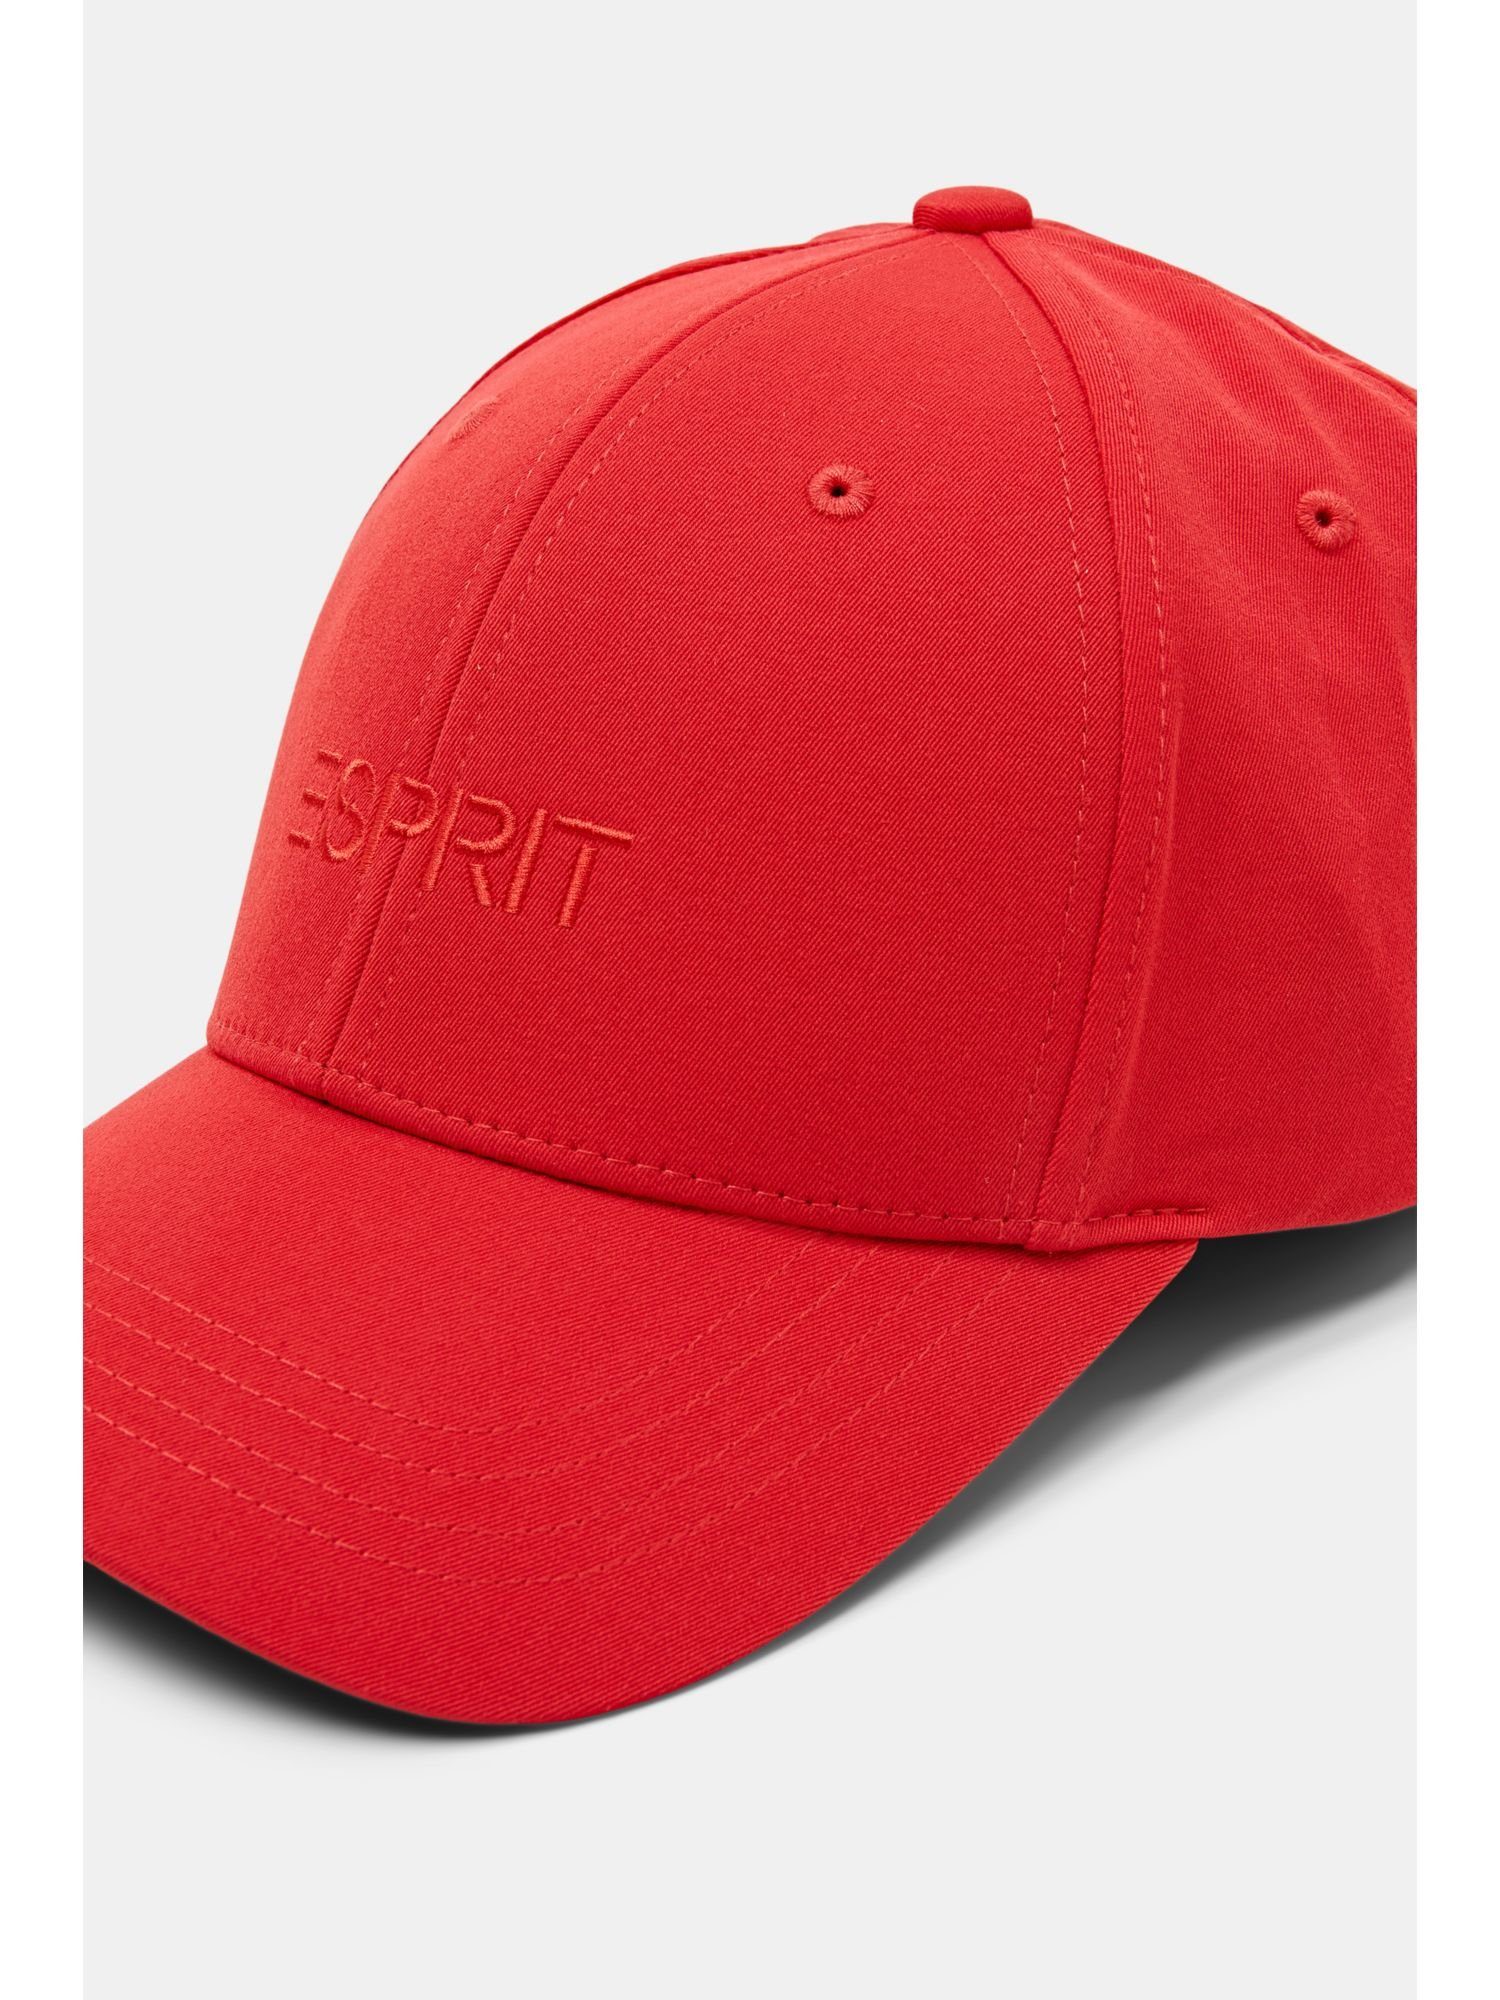 Esprit Baseball Cap Bestickte RED Baseball-Cap